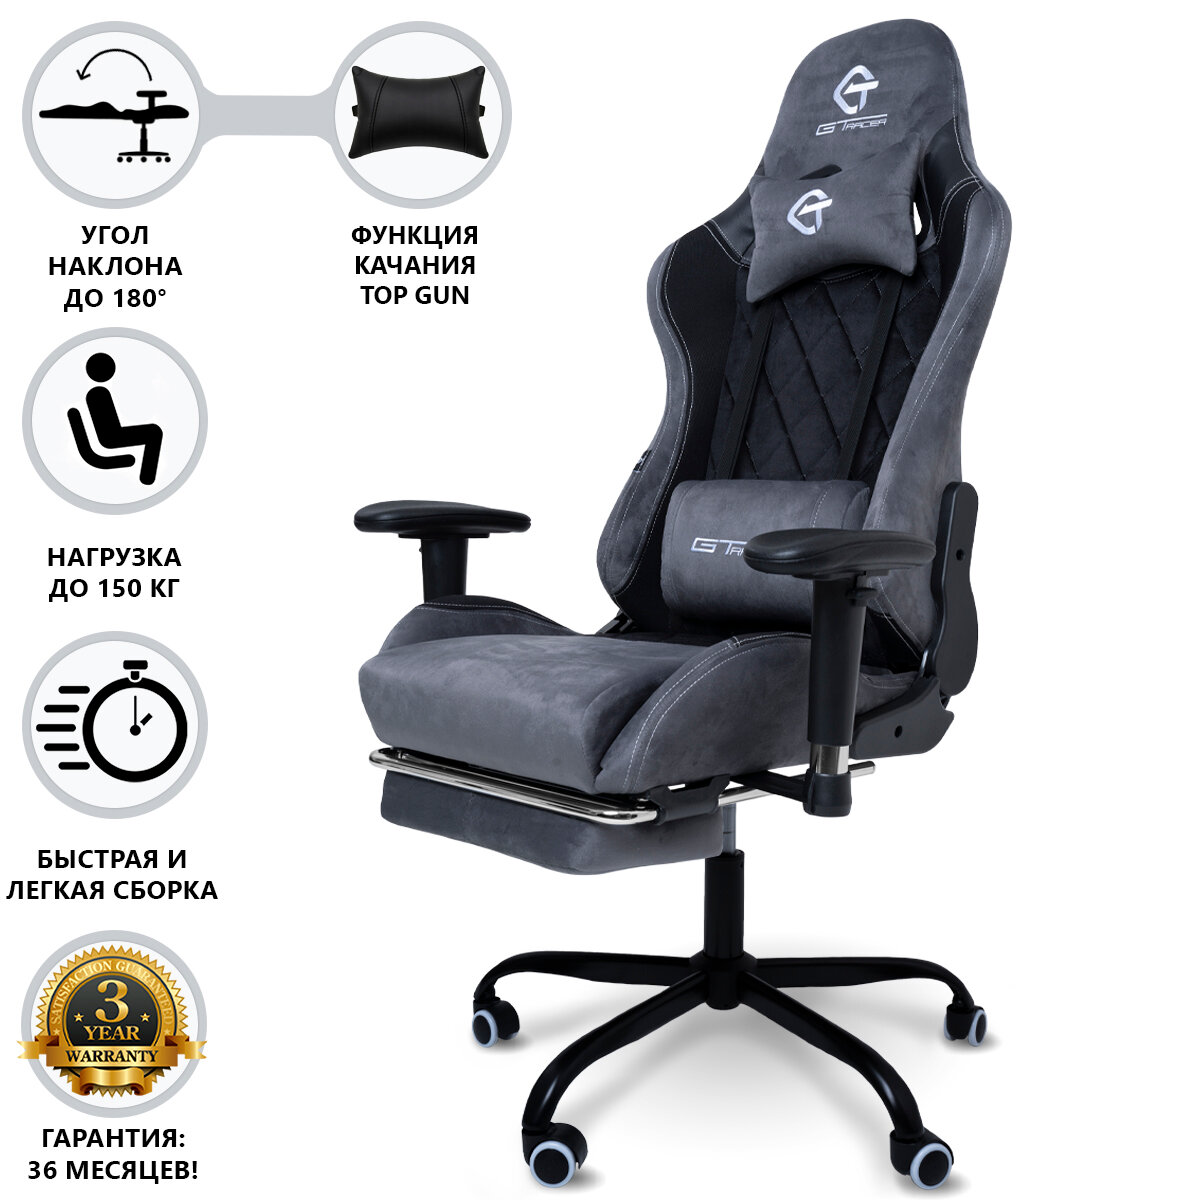 Кресло компьютерное, компьютерное кресло, игровое кресло компьютерное, кресло для дома и офиса, геймерское кресло, цвет черно-серый